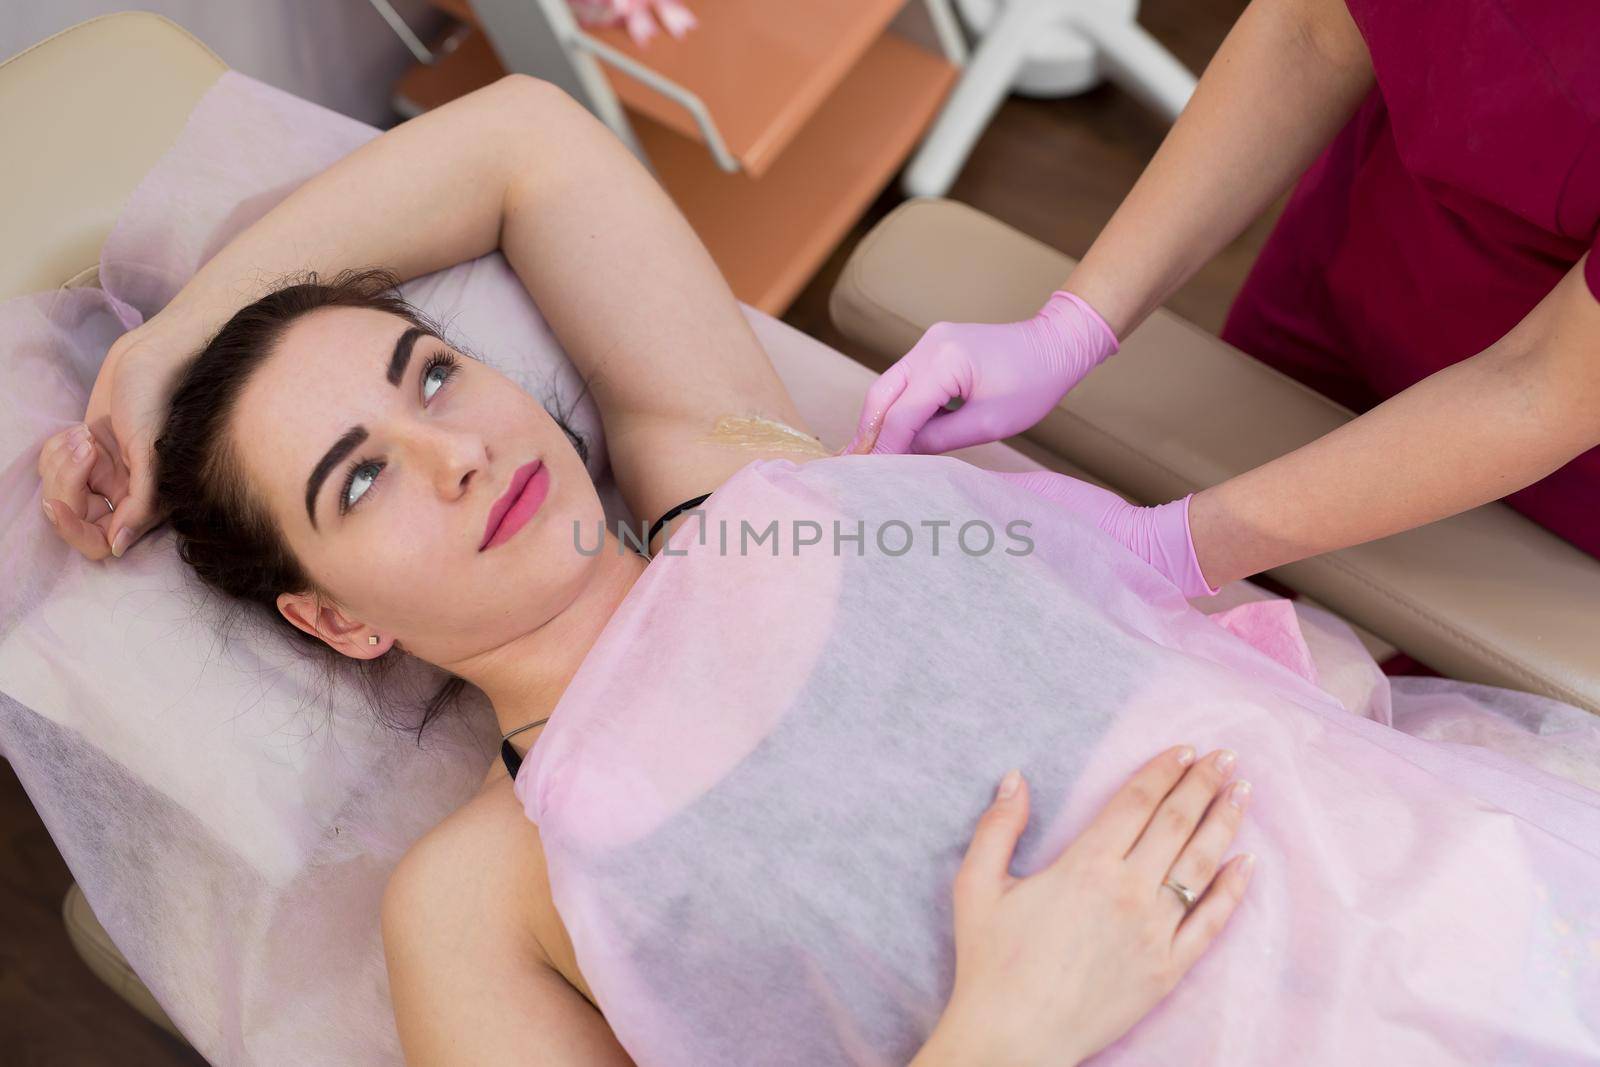 master of sugaring puts paste on the girl's armpits. Professional woman at spa beauty salon doing epilation armpits using sugar. Sugaring